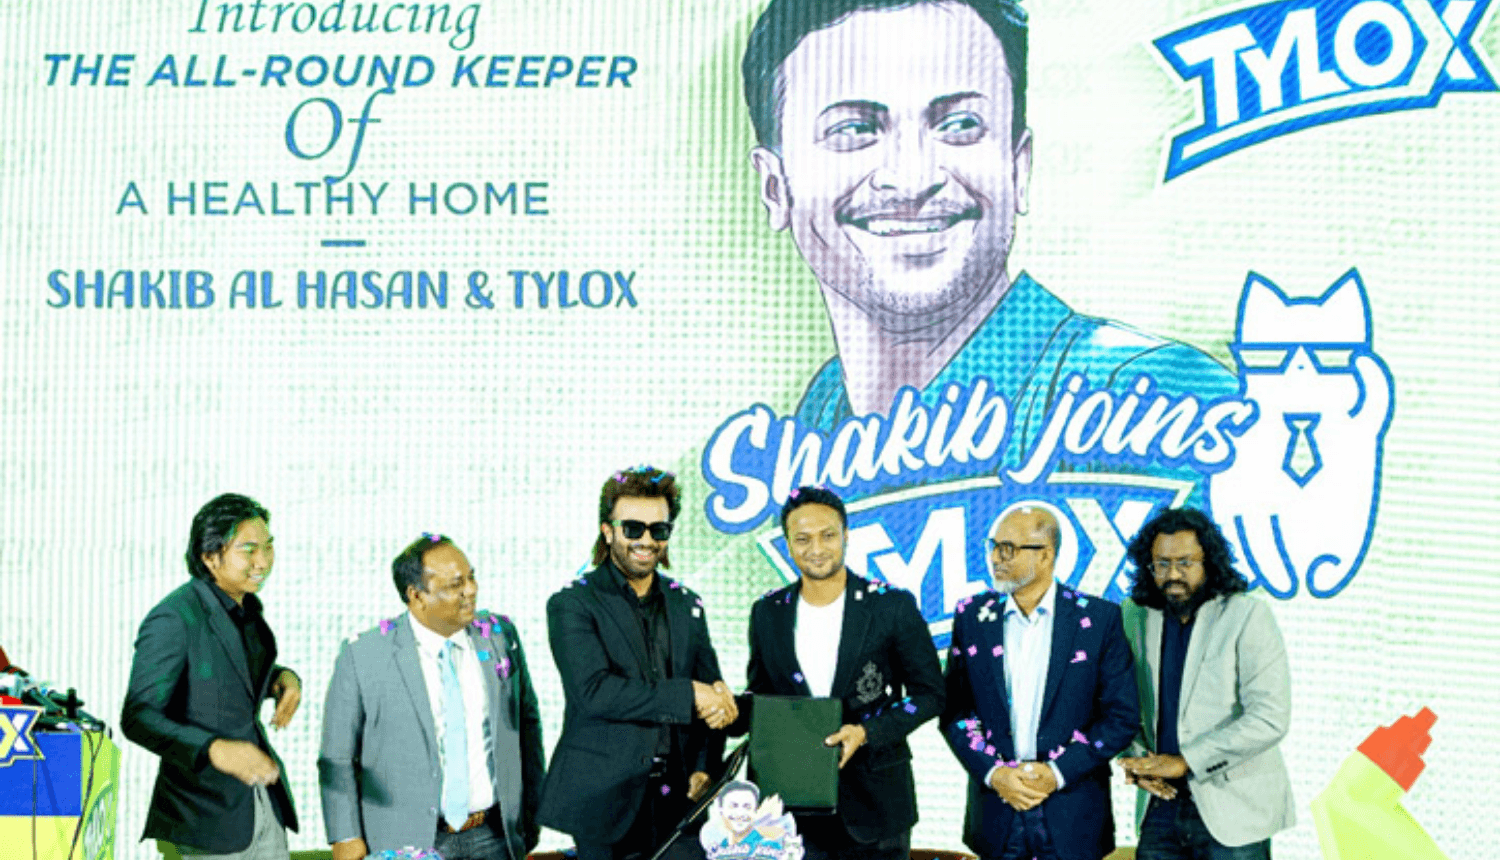 Shakib became brand ambassador of